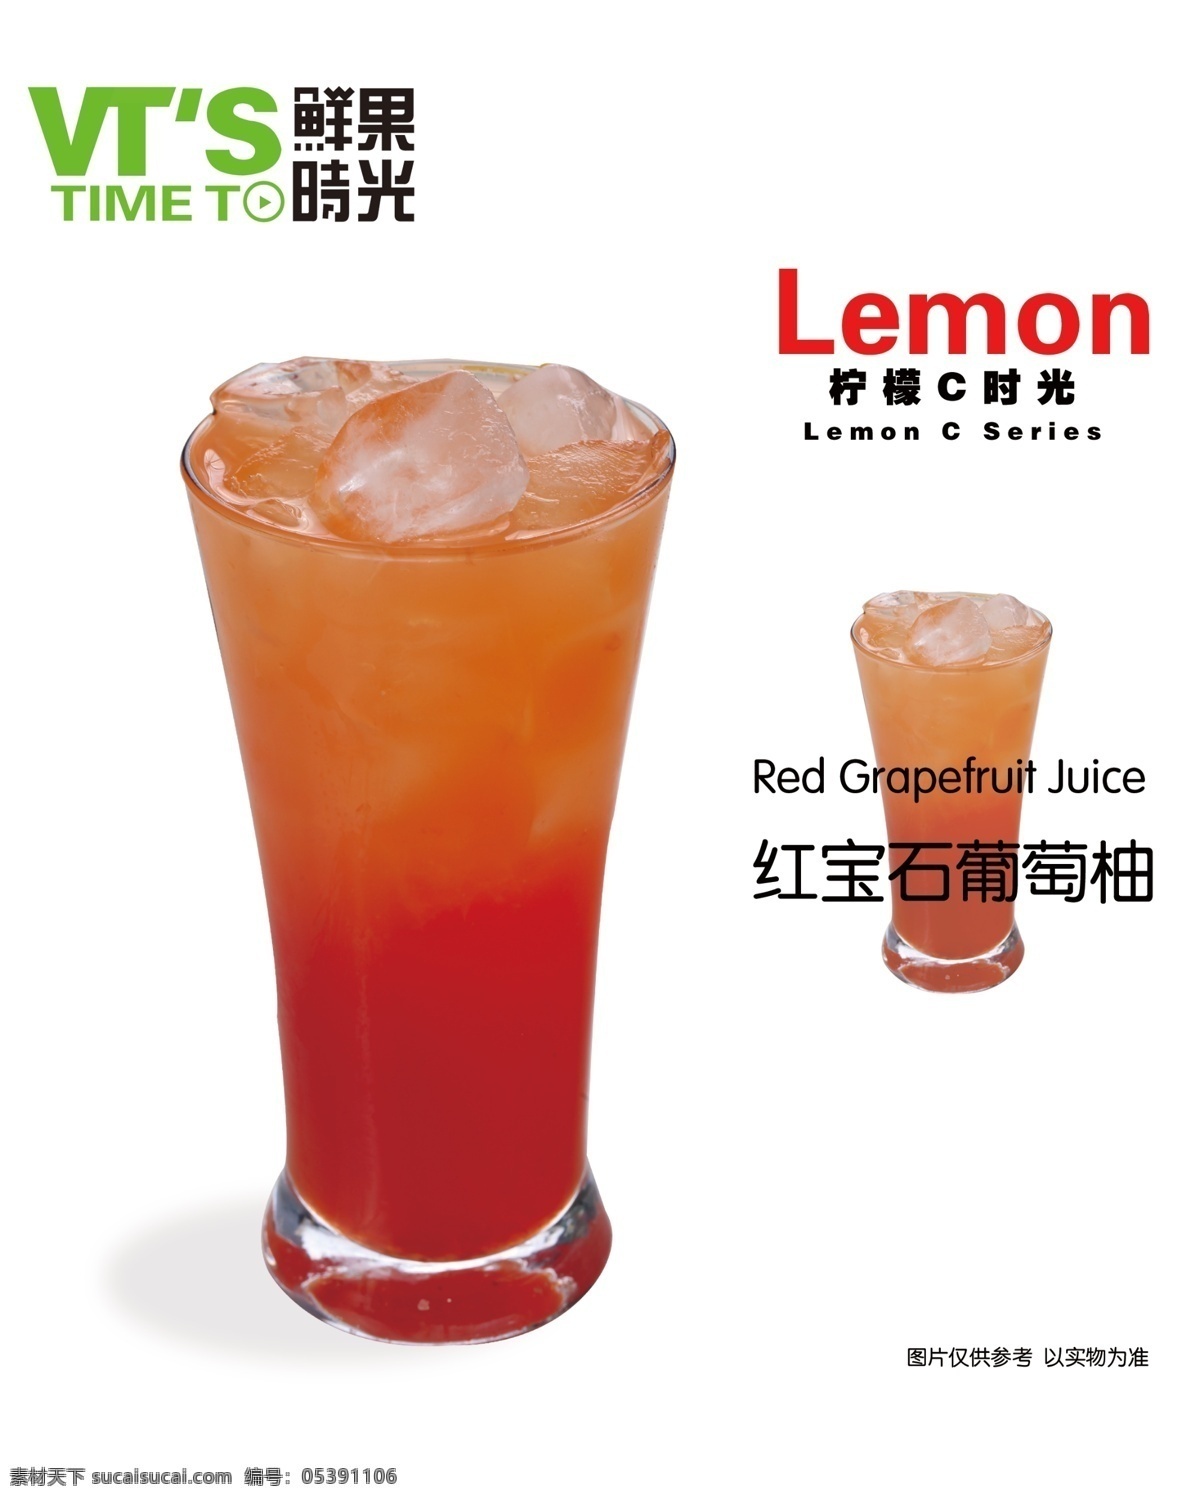 红宝石葡萄柚 奶茶 饮品 饮料 鲜果时光 产品图 饮料海报 果汁